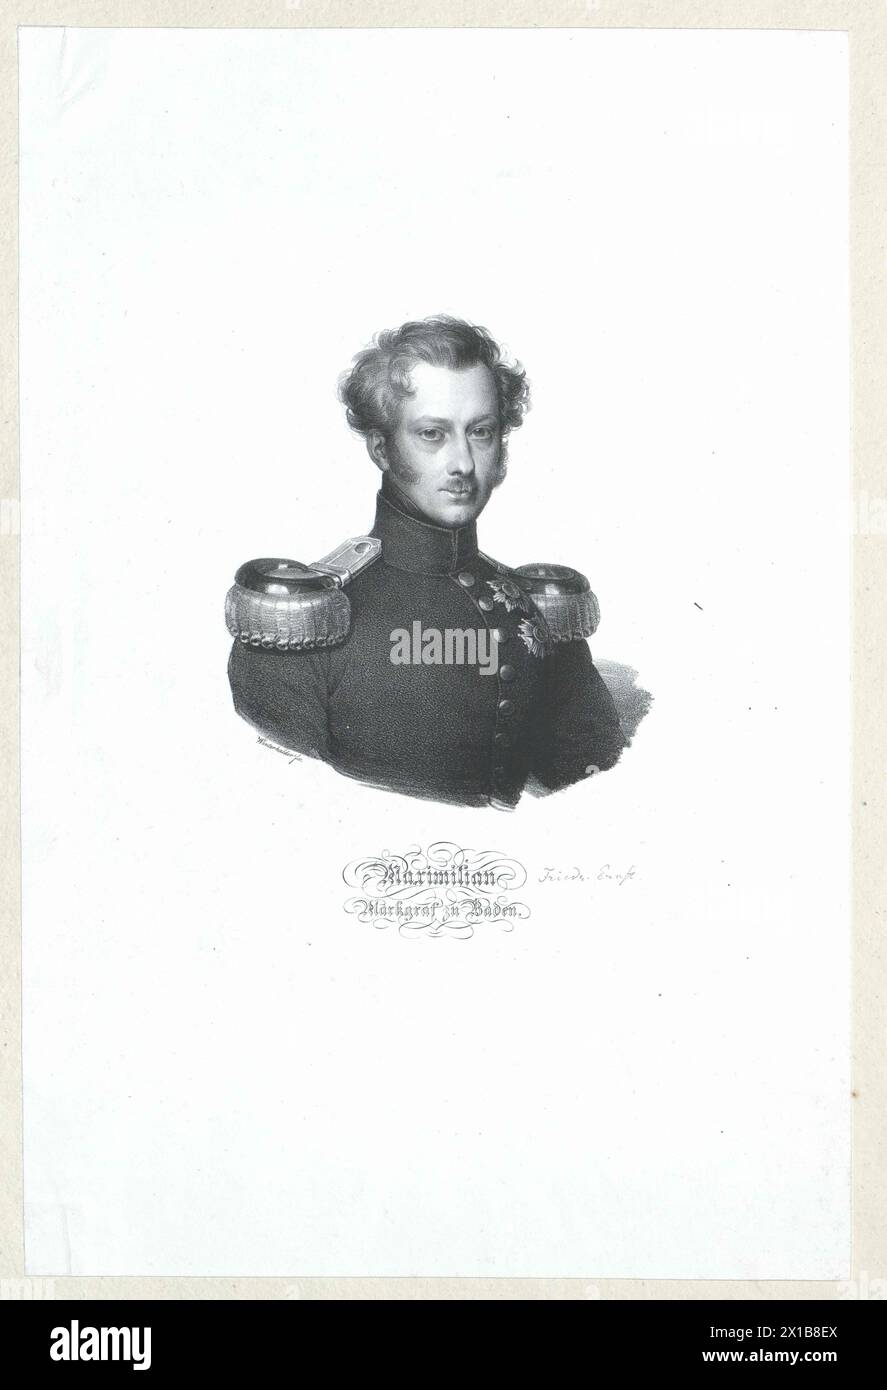 Maximilian, Markgraf von Baden, - 19830422 PD140977 - Rechteinfo: Rechte verwaltet (RM) Stockfoto